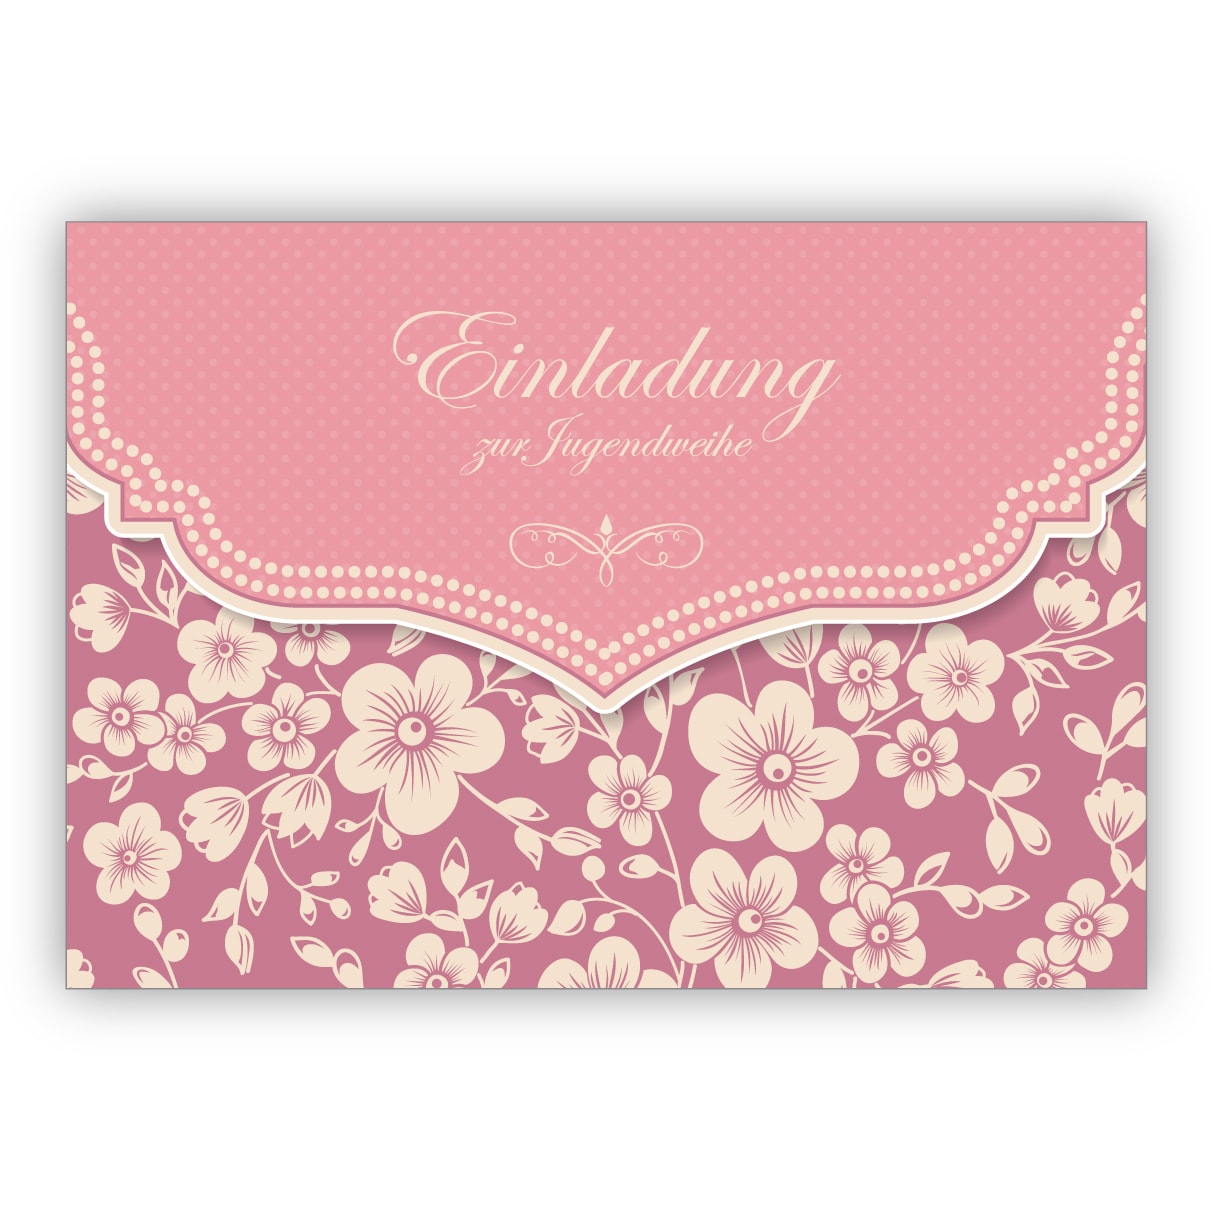 Wunderbare Vintage Einladungskarte mit Retro Kirschblüten Muster in rosa für Mädchen: Einladung zur Jugendweihe